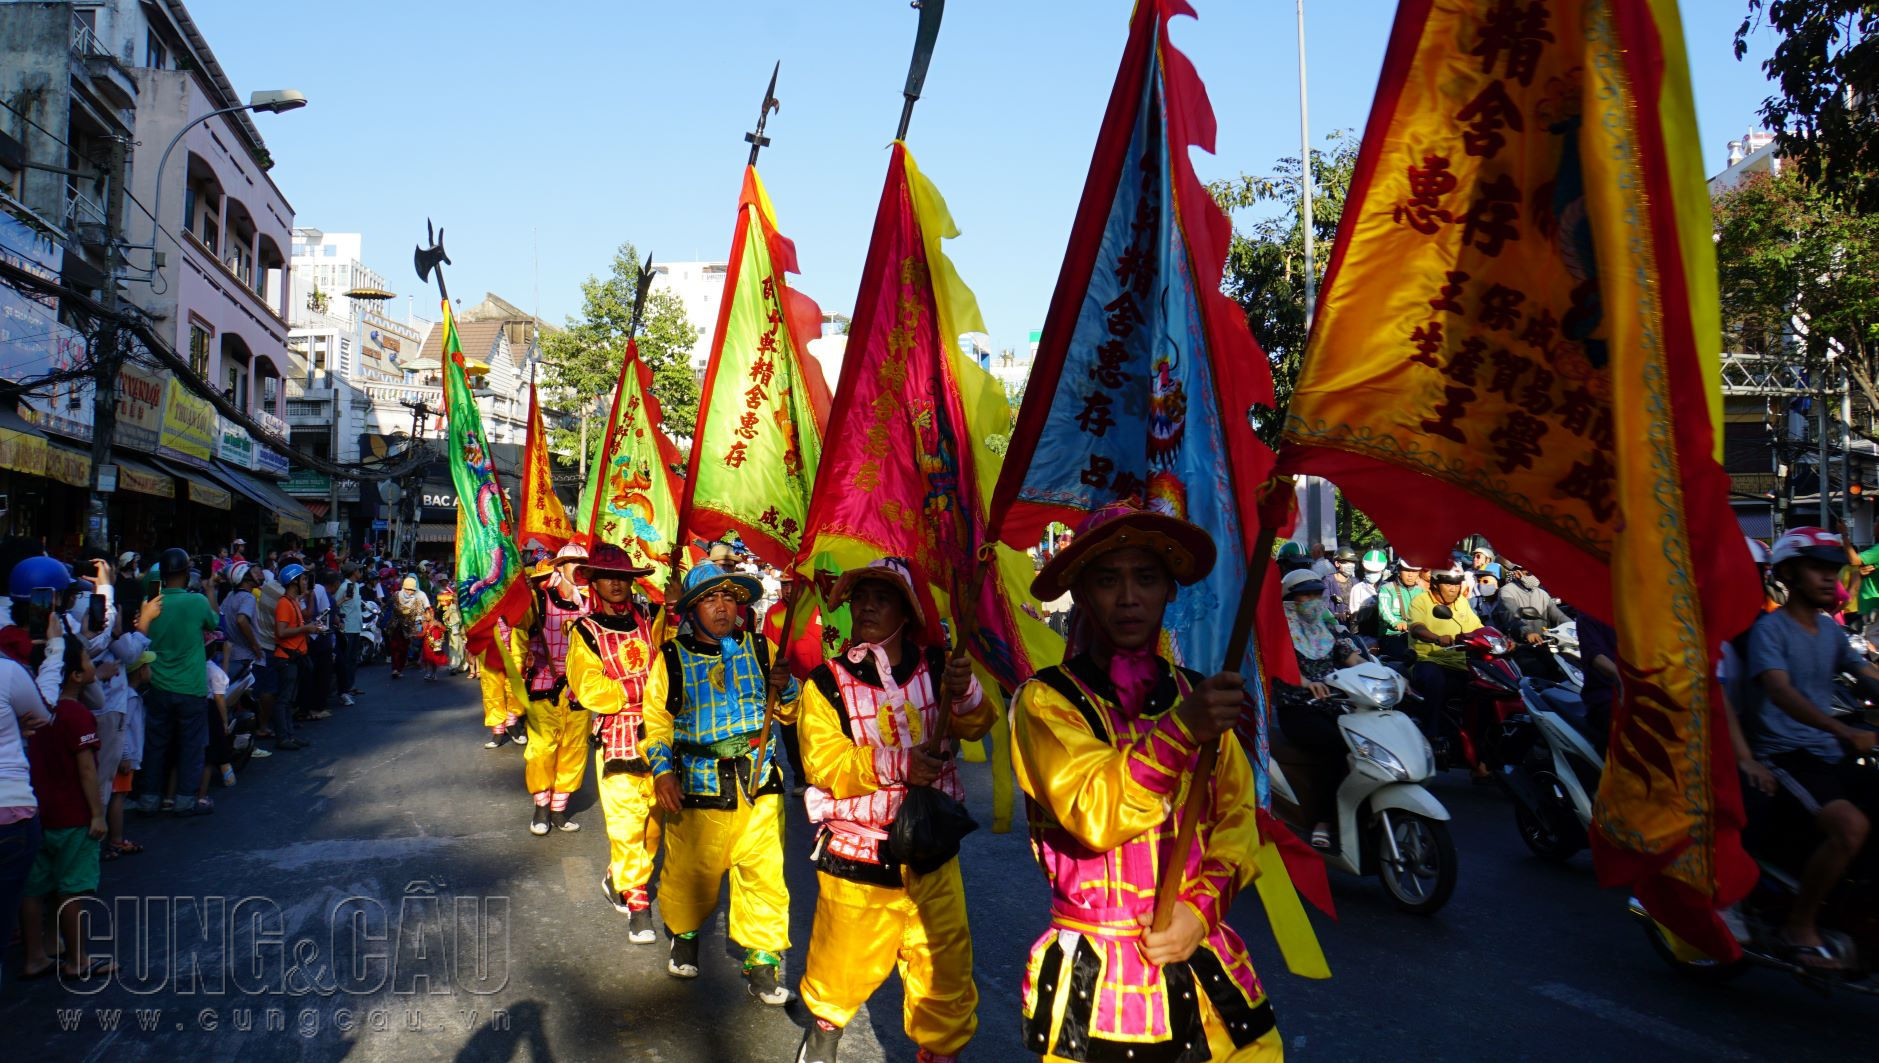 Từ 16h, cuộc diễu hành nghệ thuật quần chúng diễn ra, xuất phát từ đường Hải Thượng Lãn Ông, đoàn đi theo lộ trình đường Châu Văn Liêm, Lão Tữ, Lương Nhữ Học, Nguyễn Trãi.